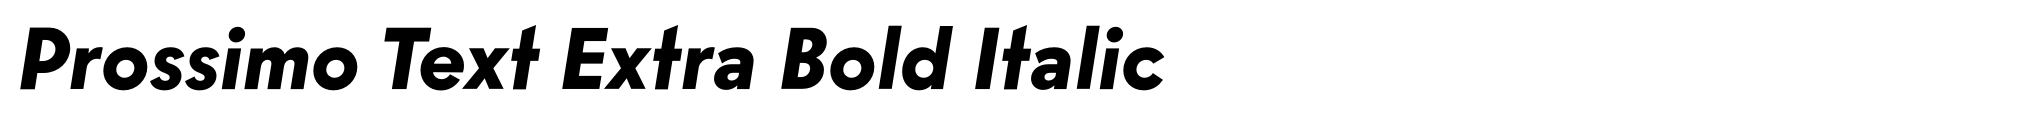 Prossimo Text Extra Bold Italic image